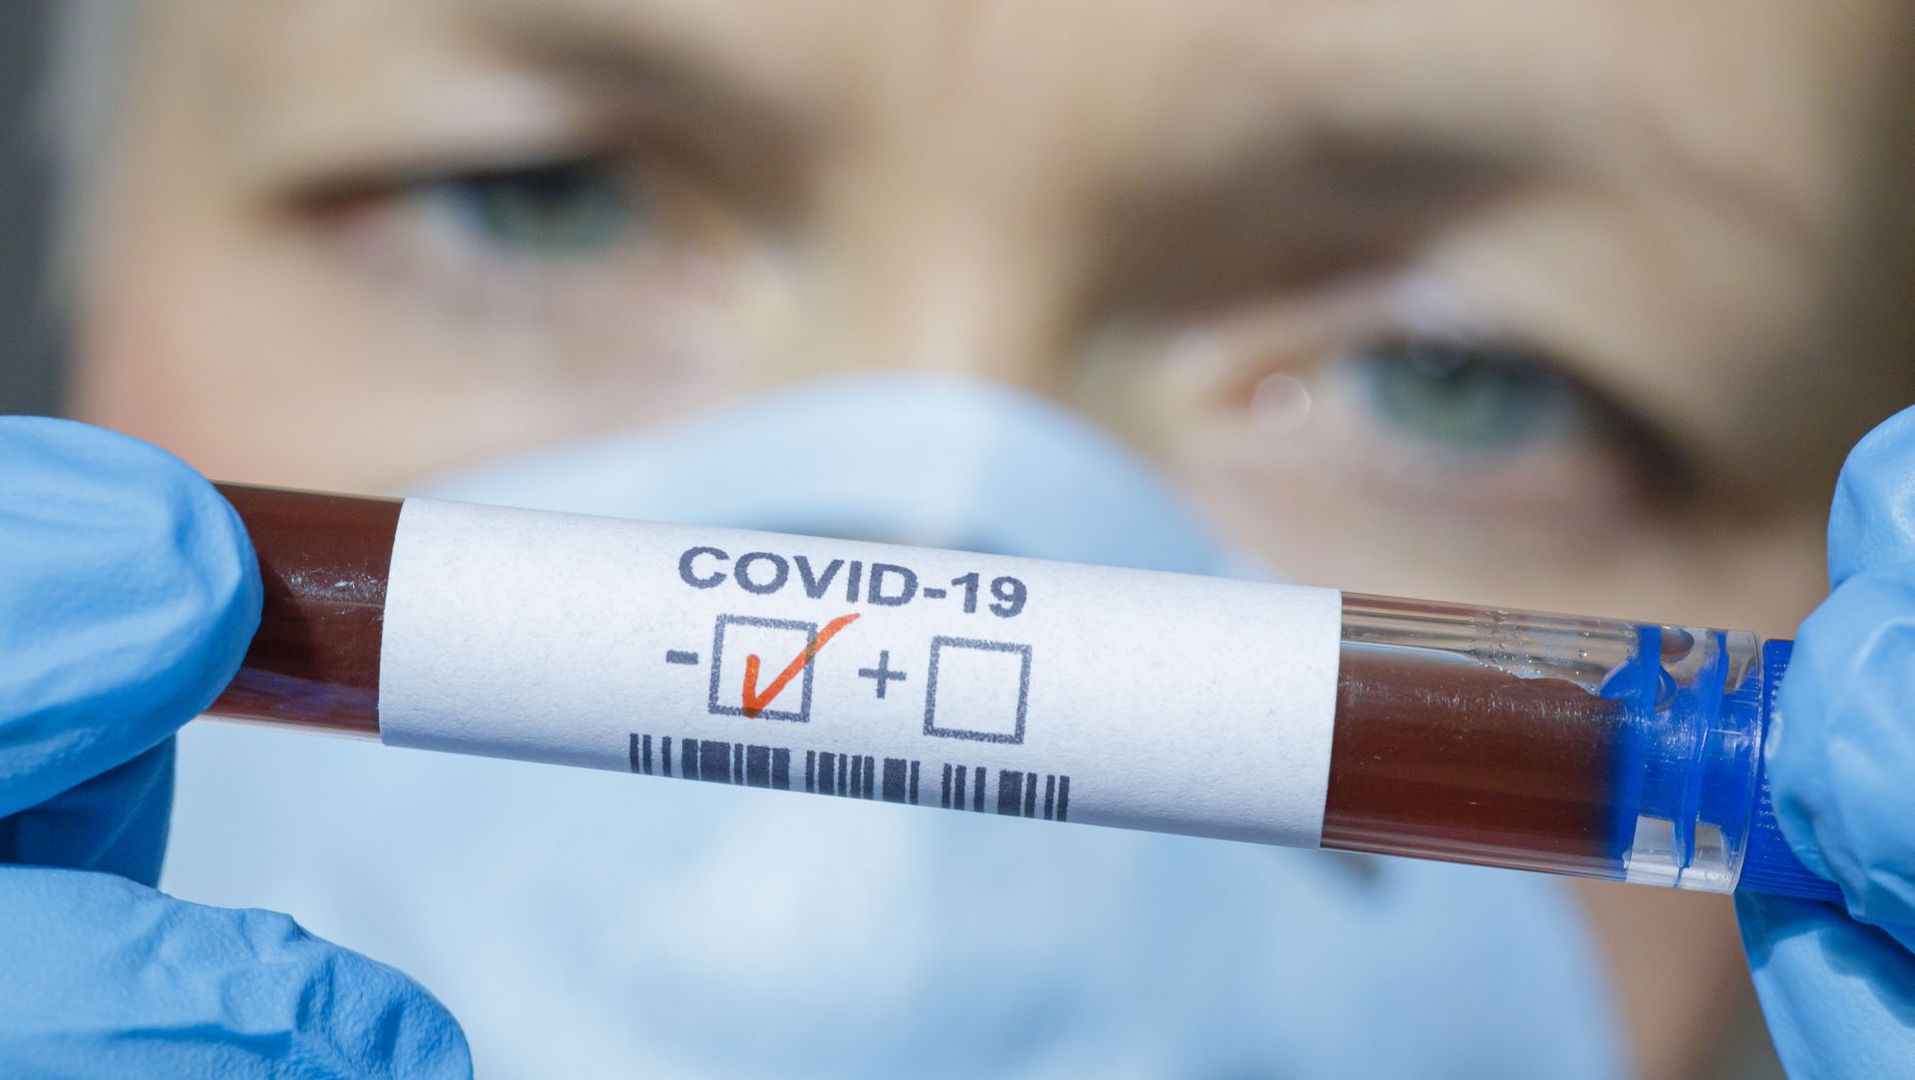 Koronawirus – jak długo jeszcze musimy wytrzymać?